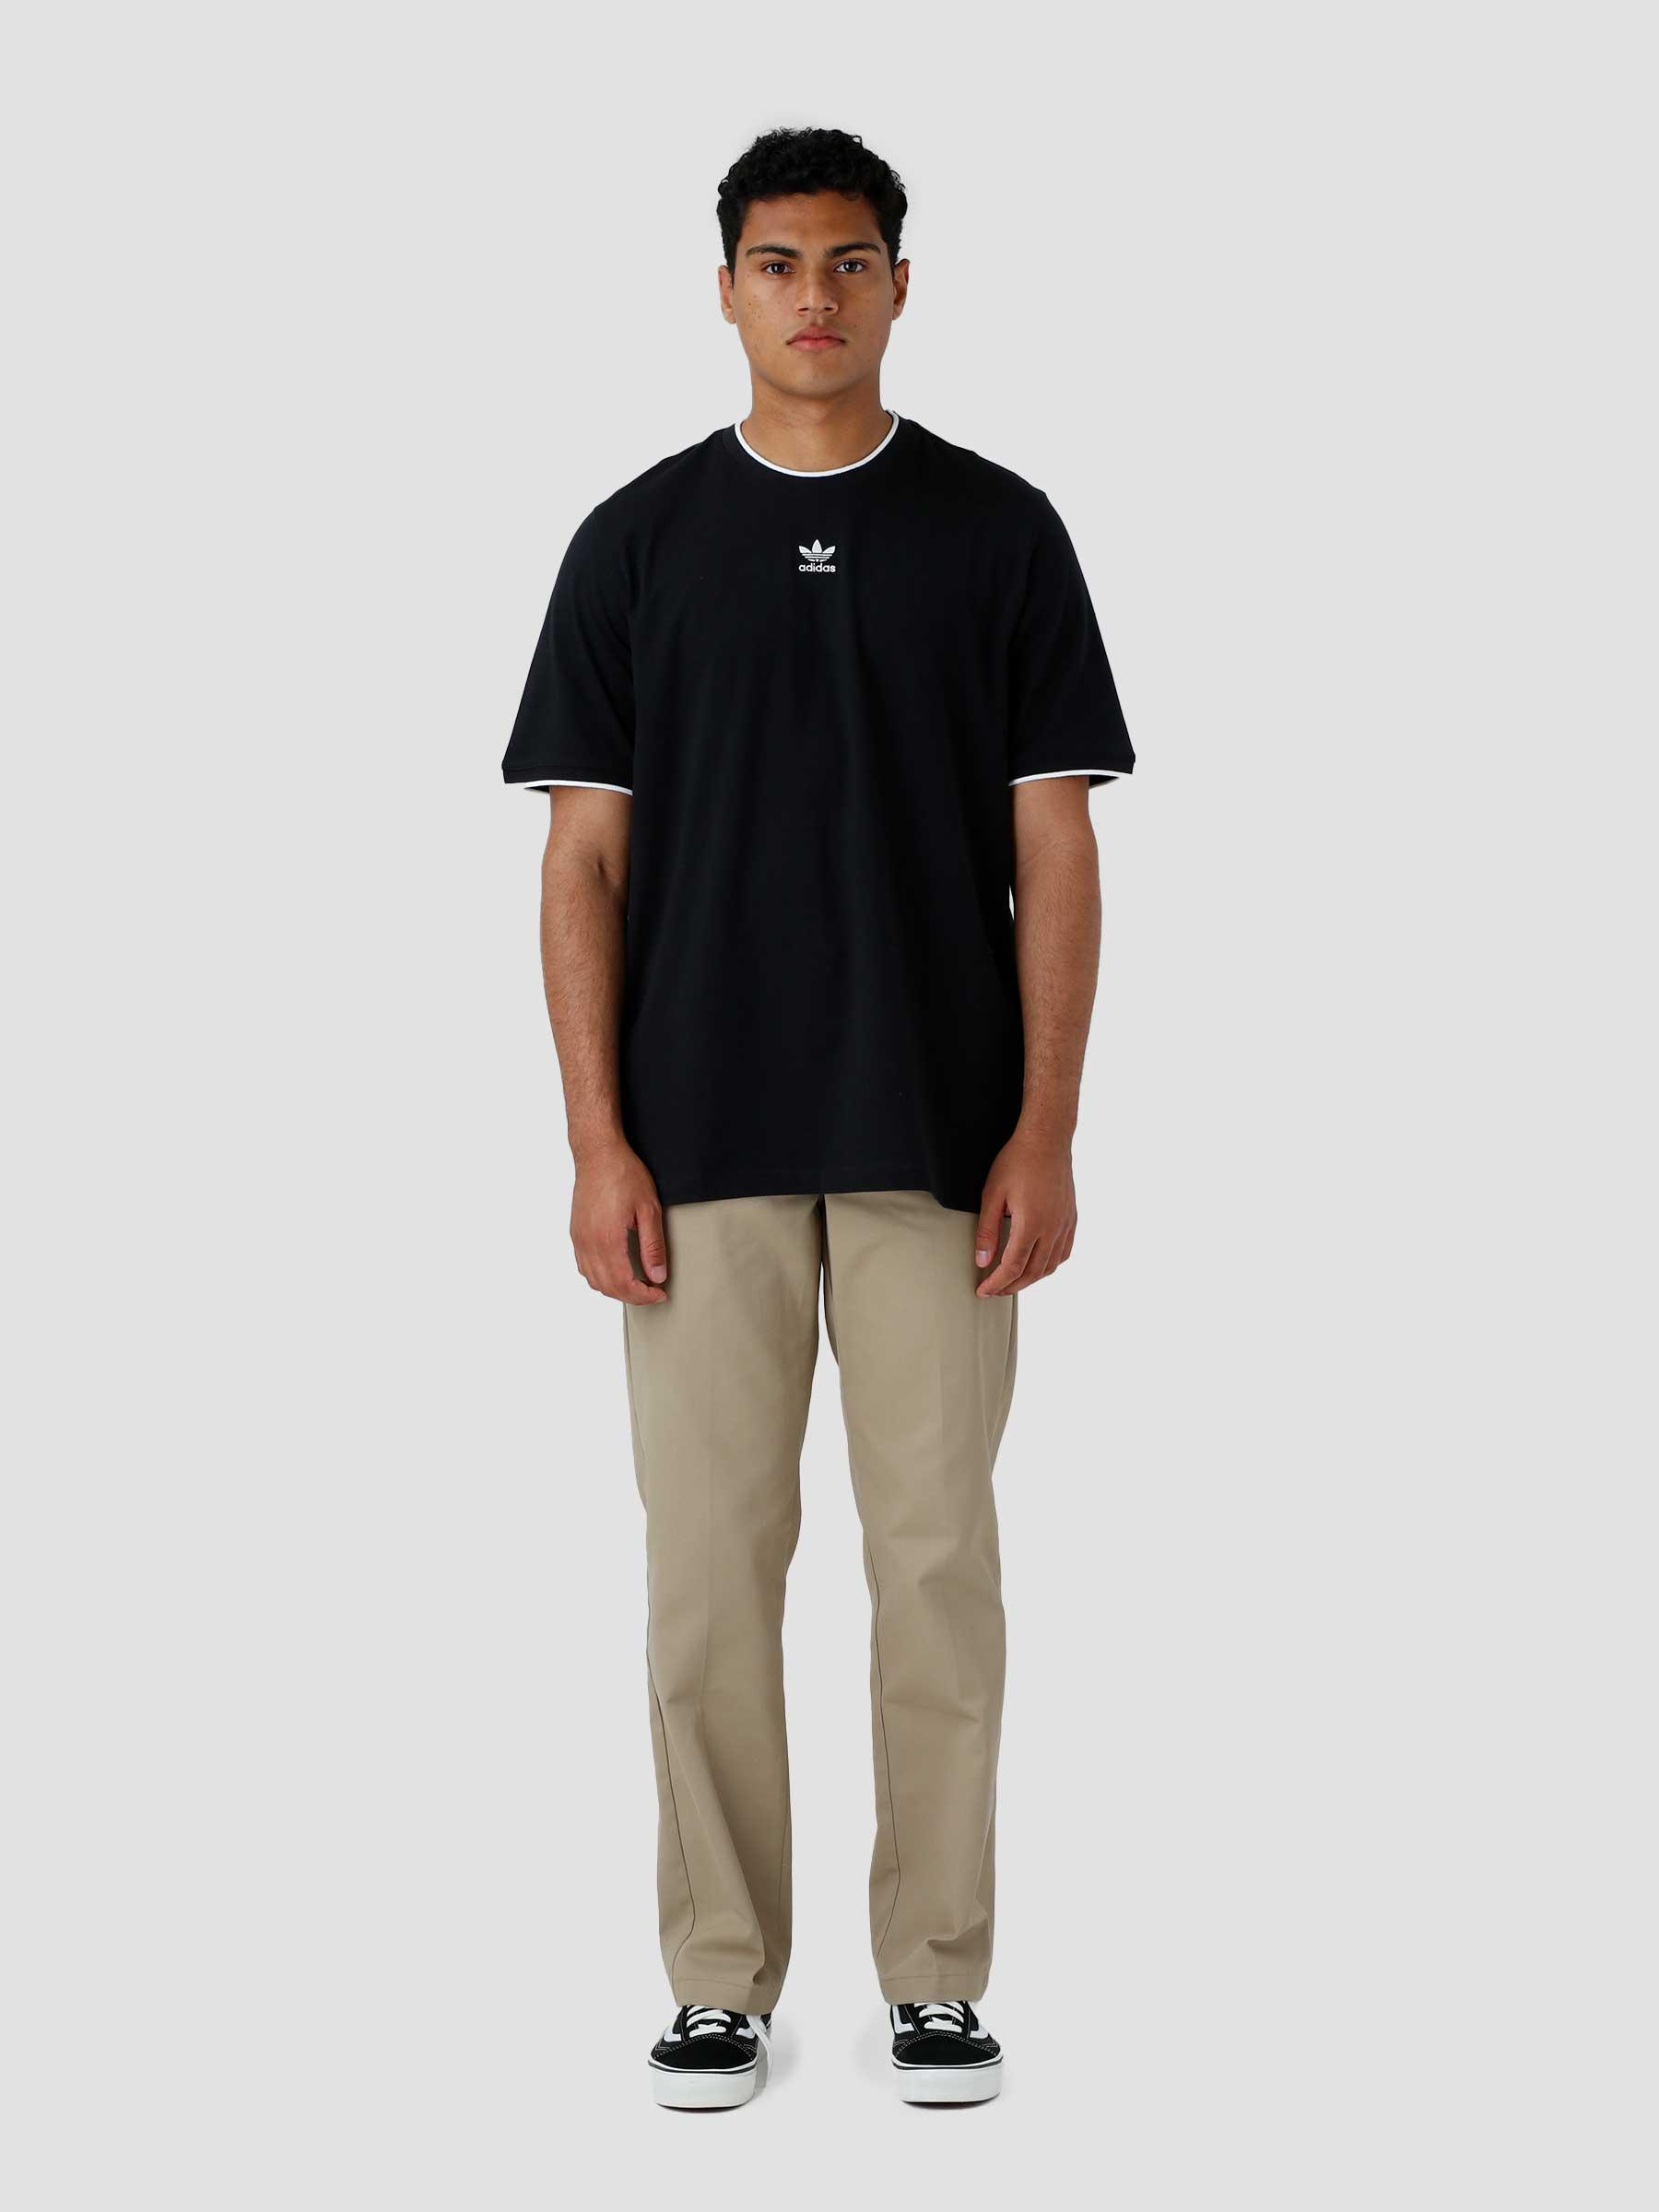 adidas Essential T-Shirt Black - Freshcotton